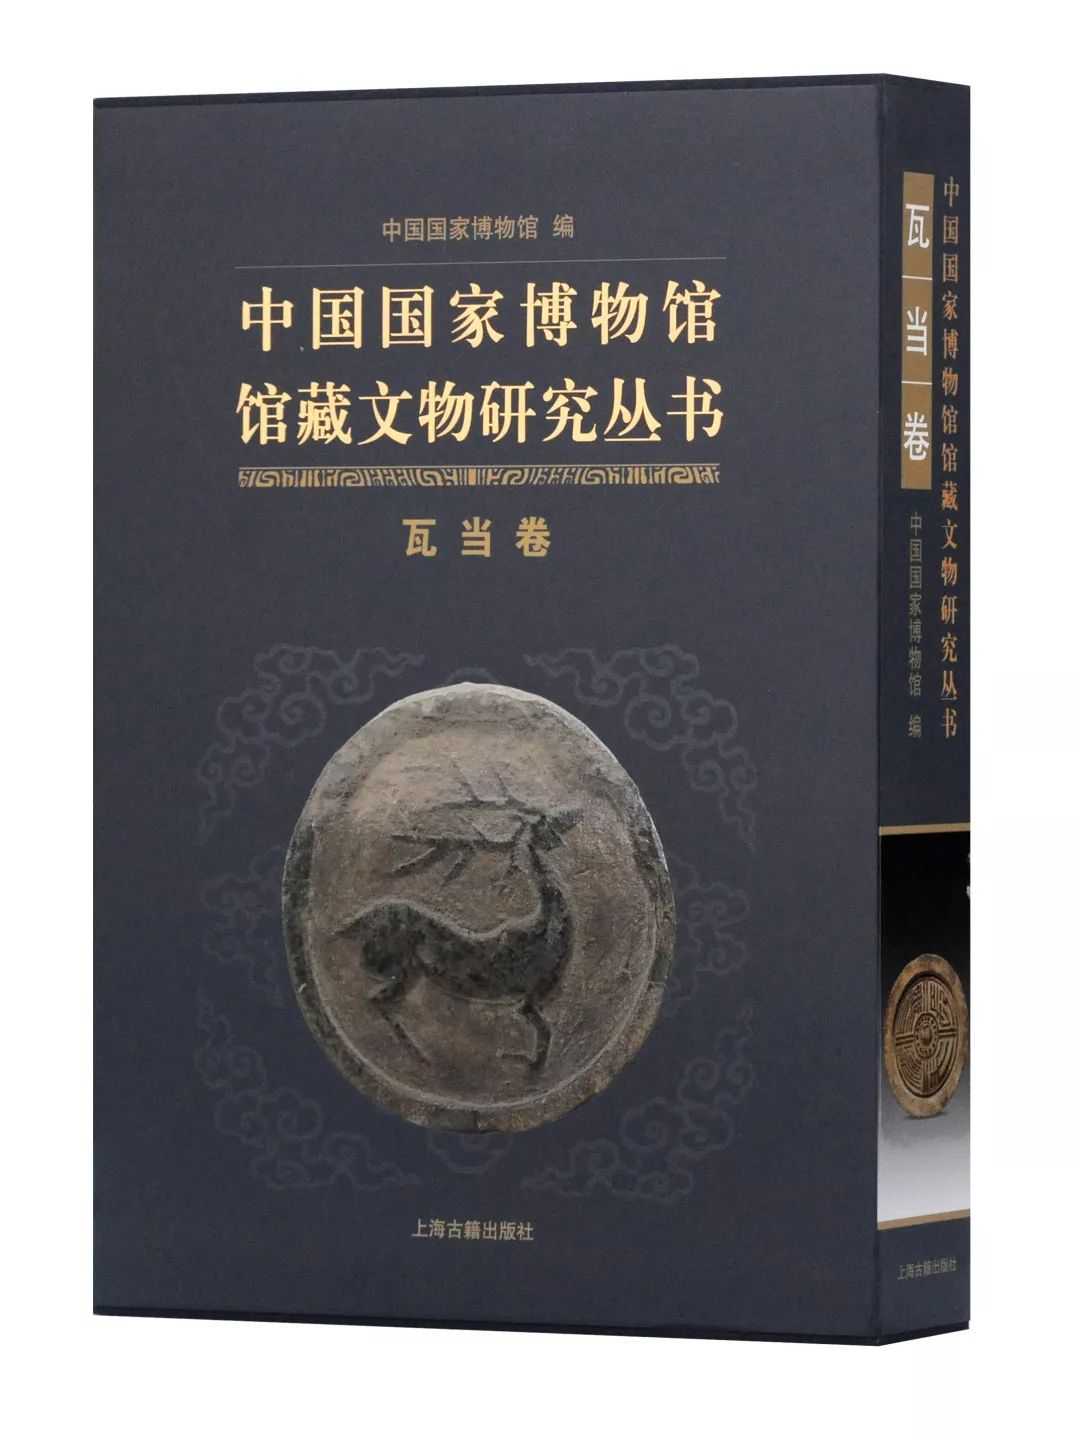 上海出版·每月书单｜上海古籍出版社2019年9月书单